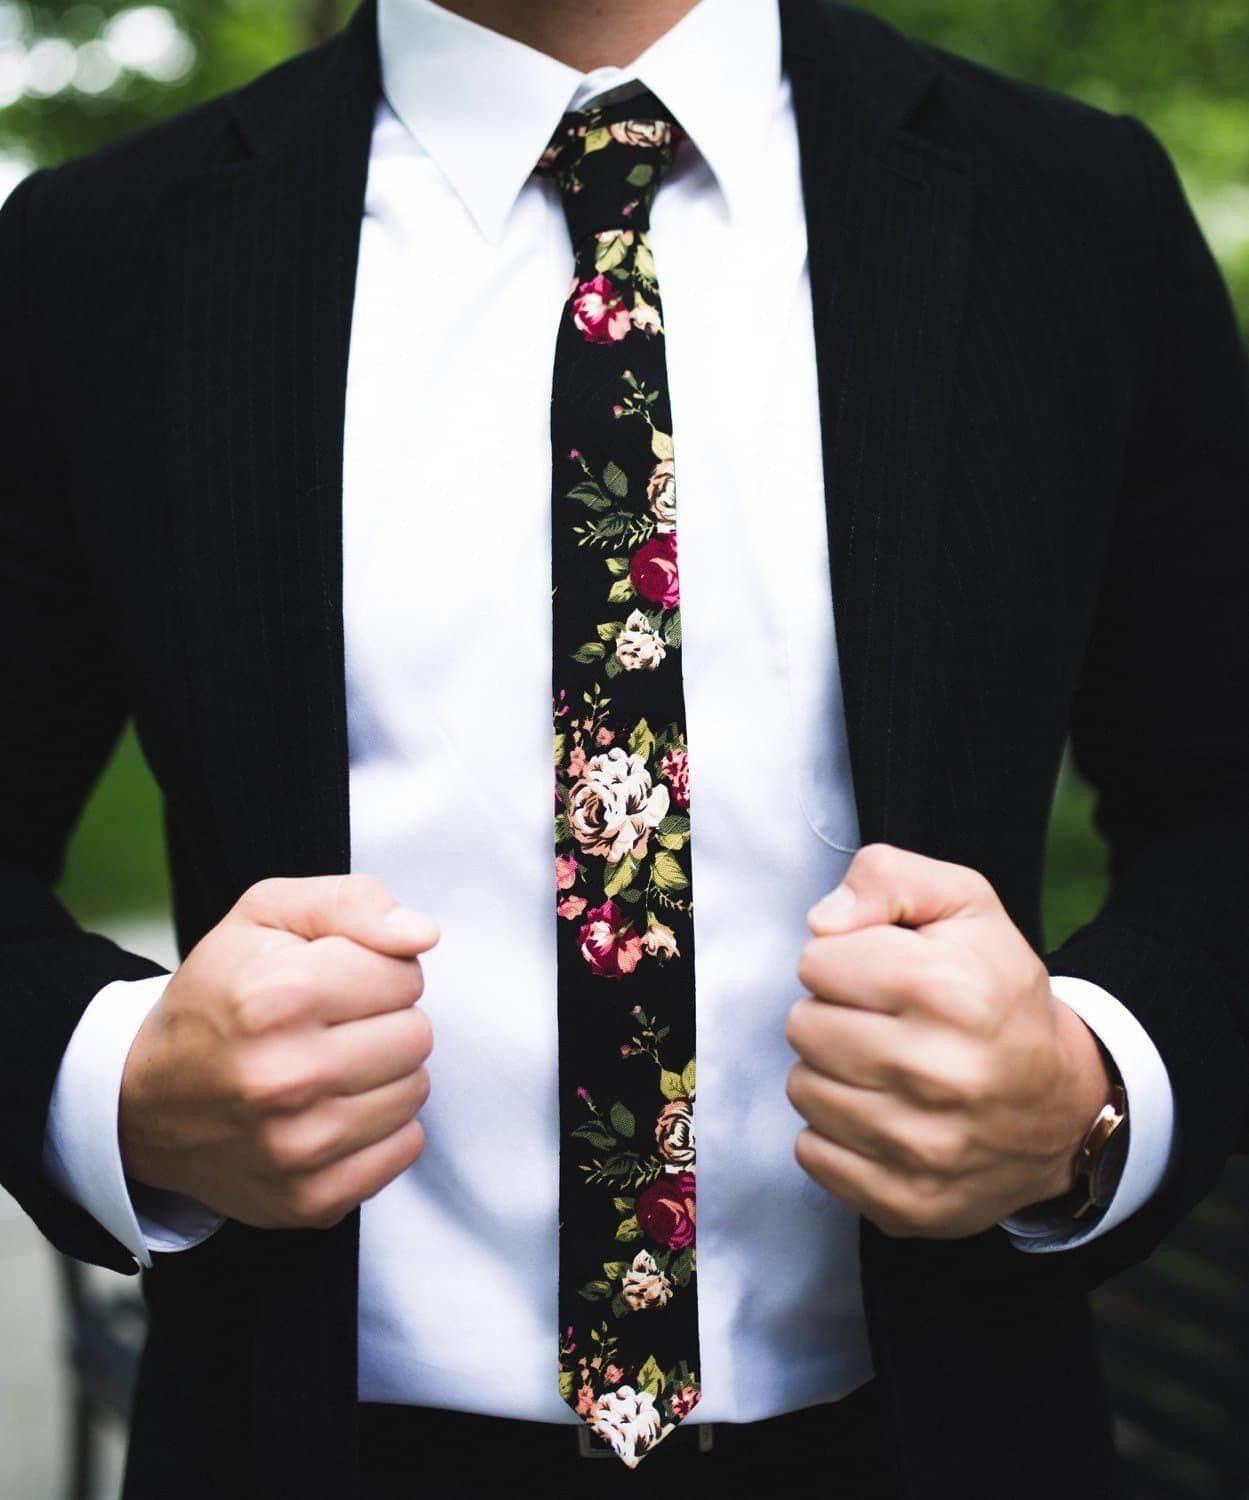  iujybax Floral Ties for Men, Mens Floral Tie Skinny